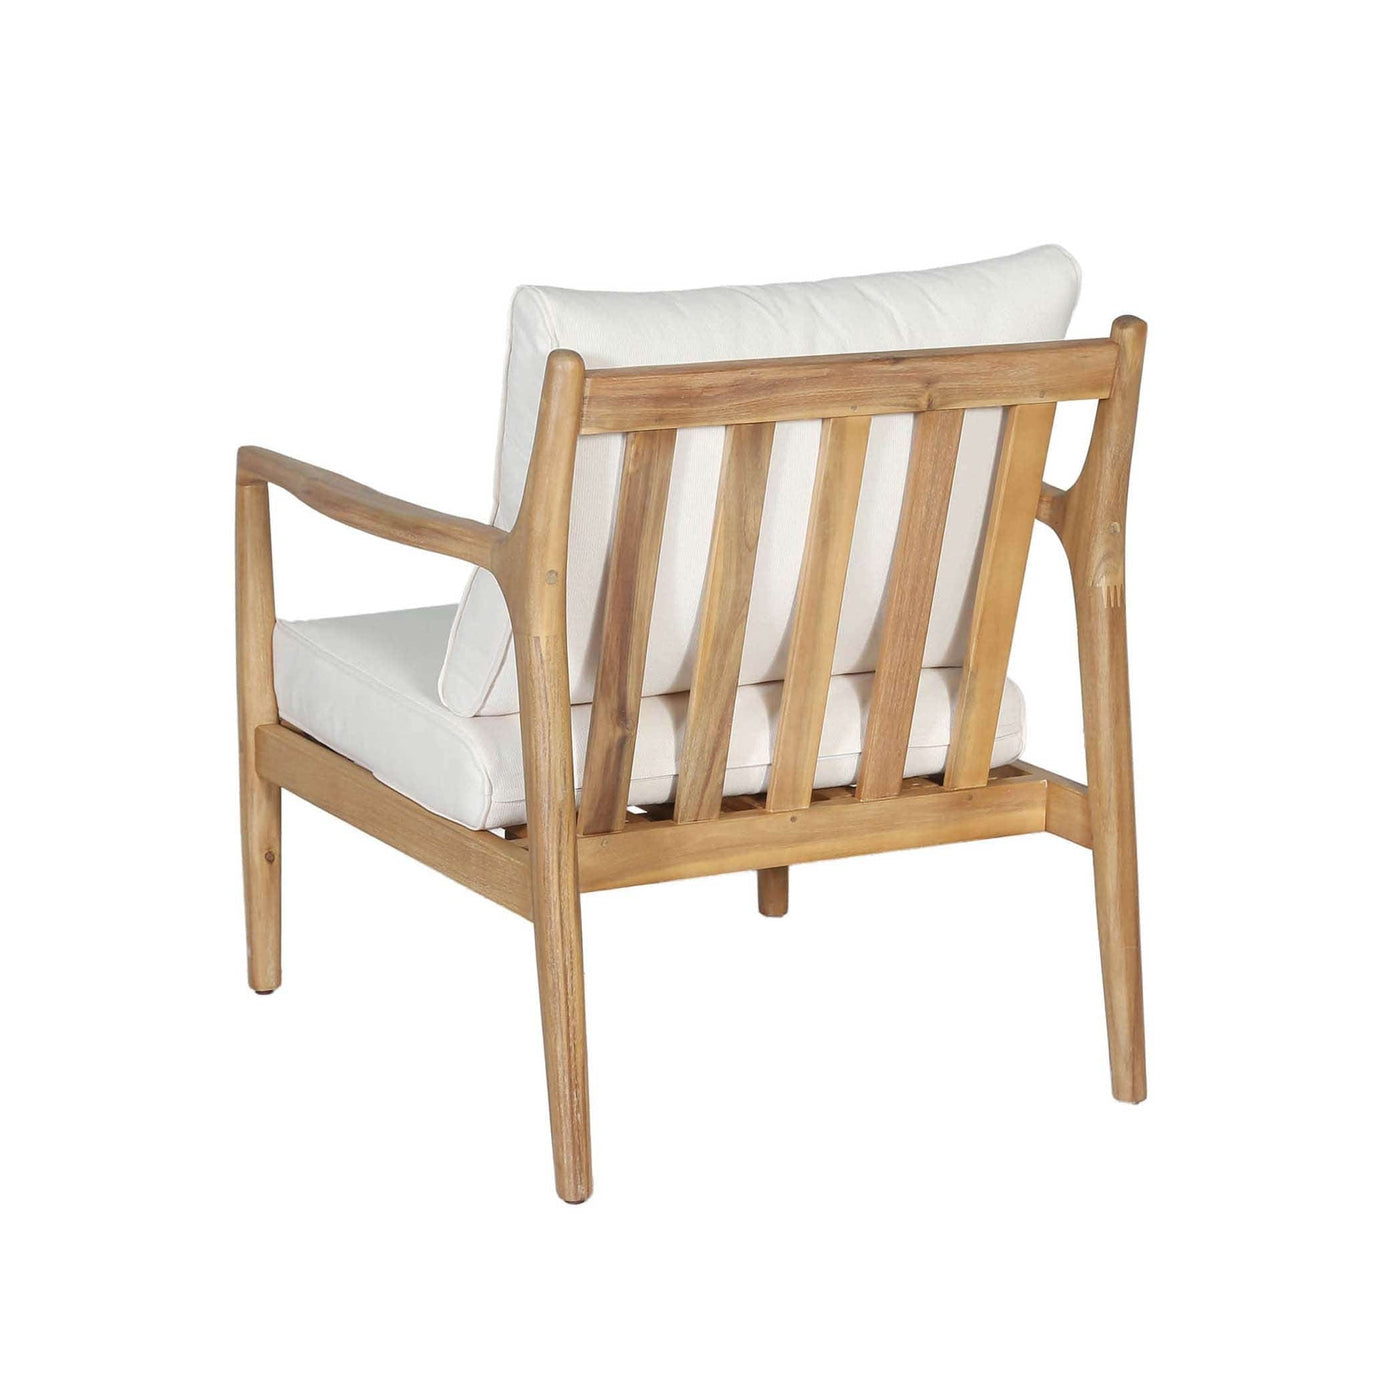 Élevez votre espace extérieur avec le fauteuil Sonoma en bois d'acacia massif. Chaleur naturelle et durabilité exceptionnelle pour une expérience luxueuse en plein air.